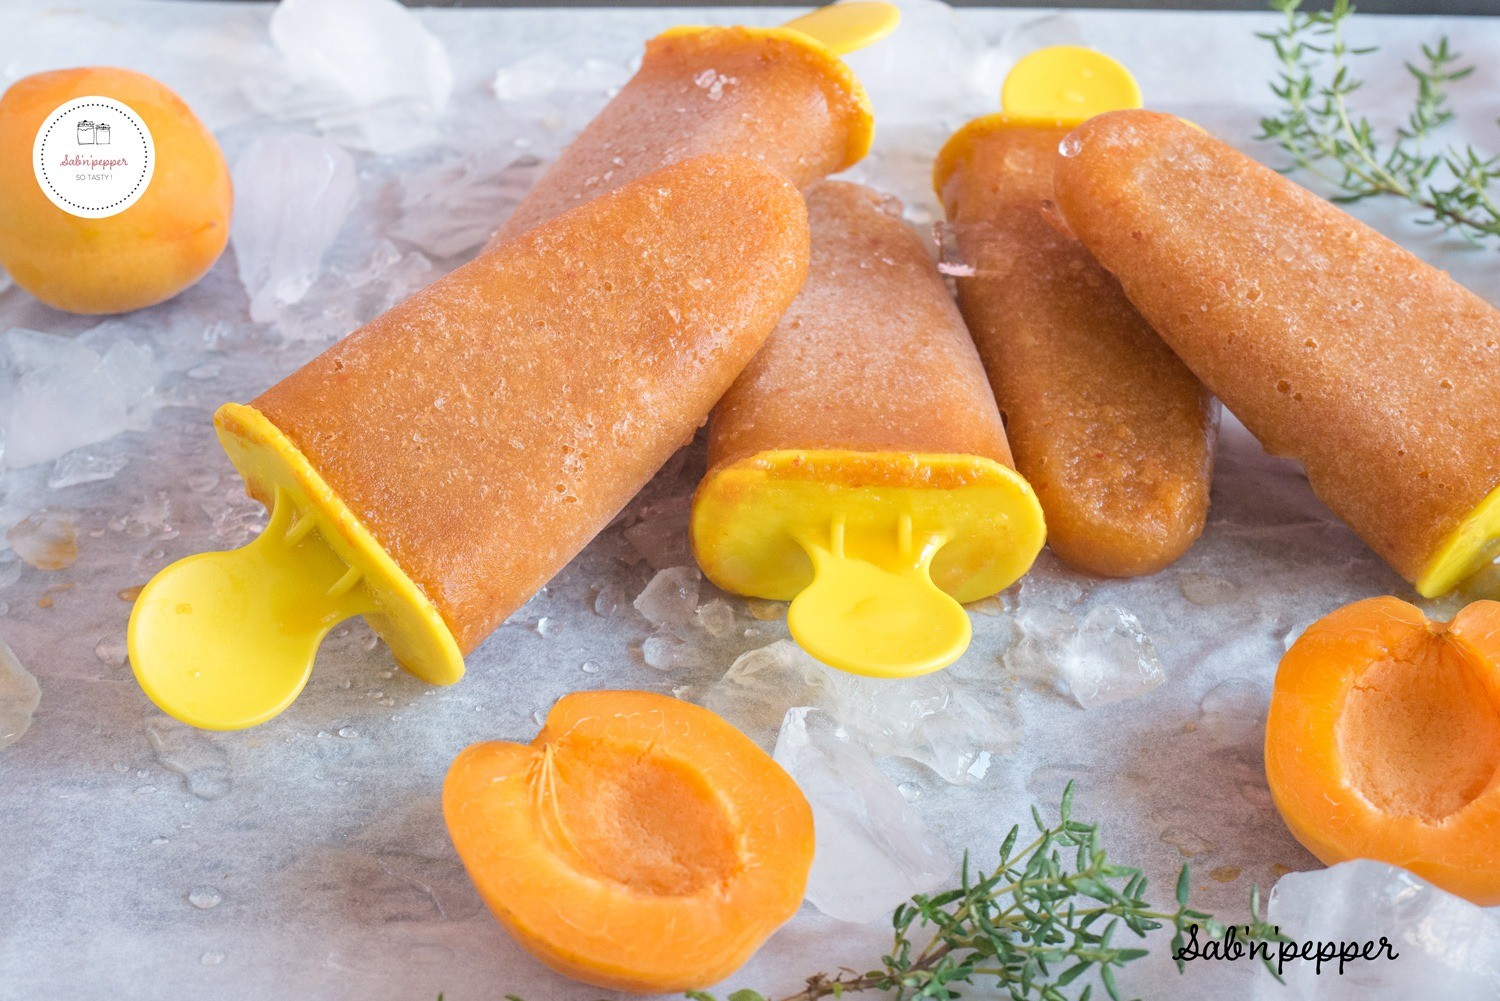 Des esquimaux abricot thym sont un dessert frais parfait pour les enfants